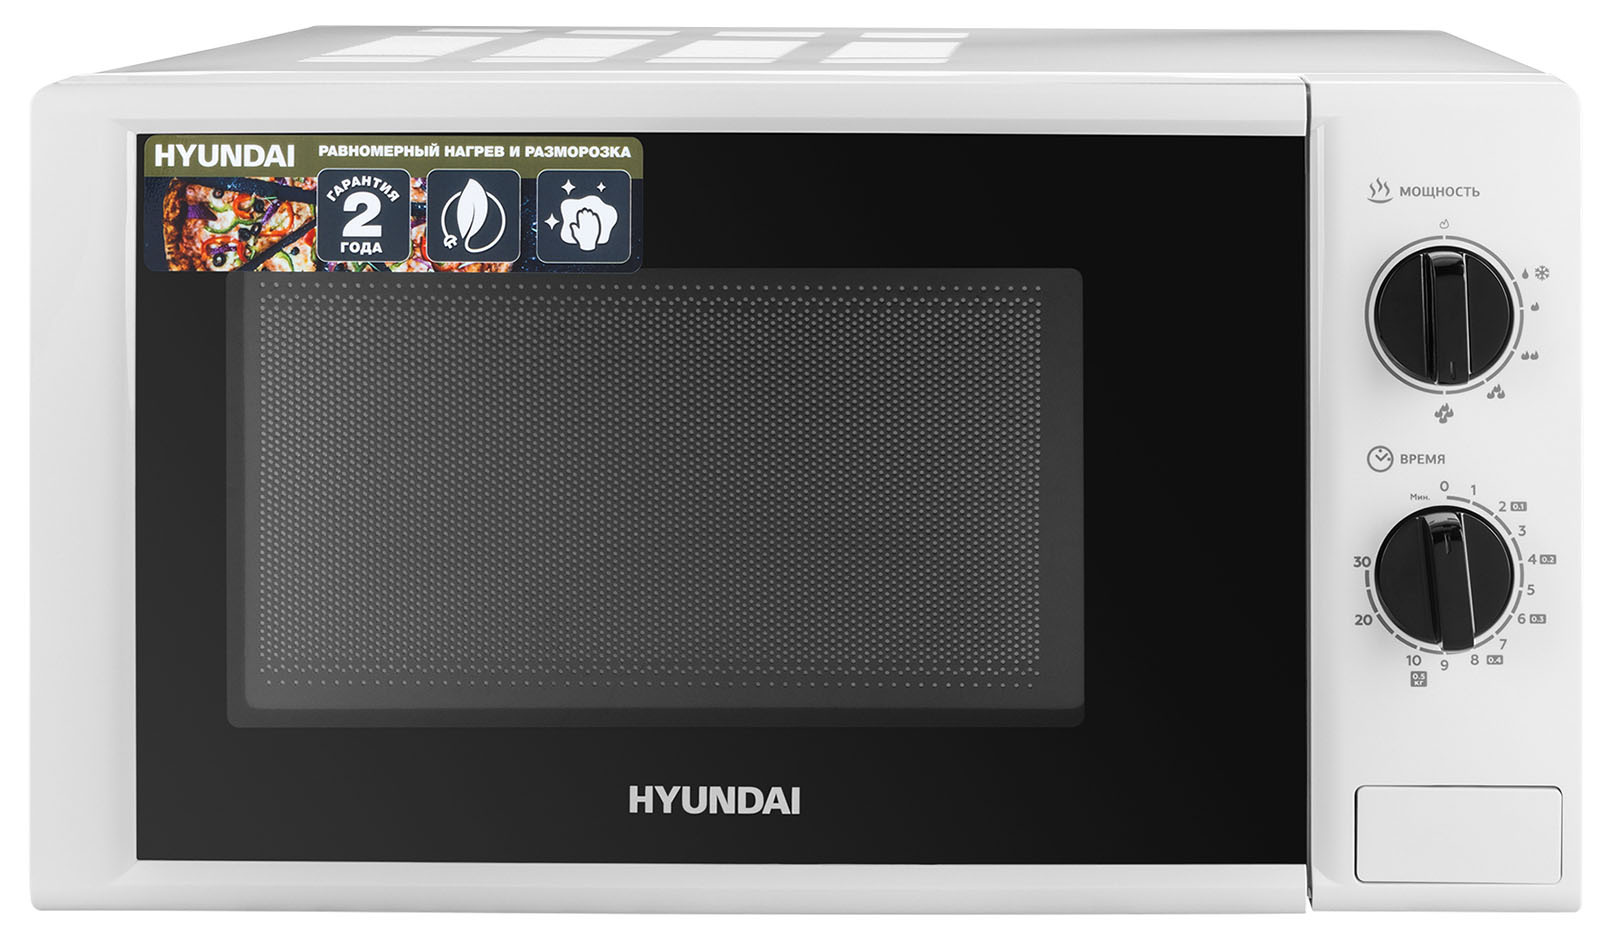 Микроволновая печь соло HYUNDAI HYM-M2048 белый, купить в Москве, цены в интернет-магазинах на Мегамаркет